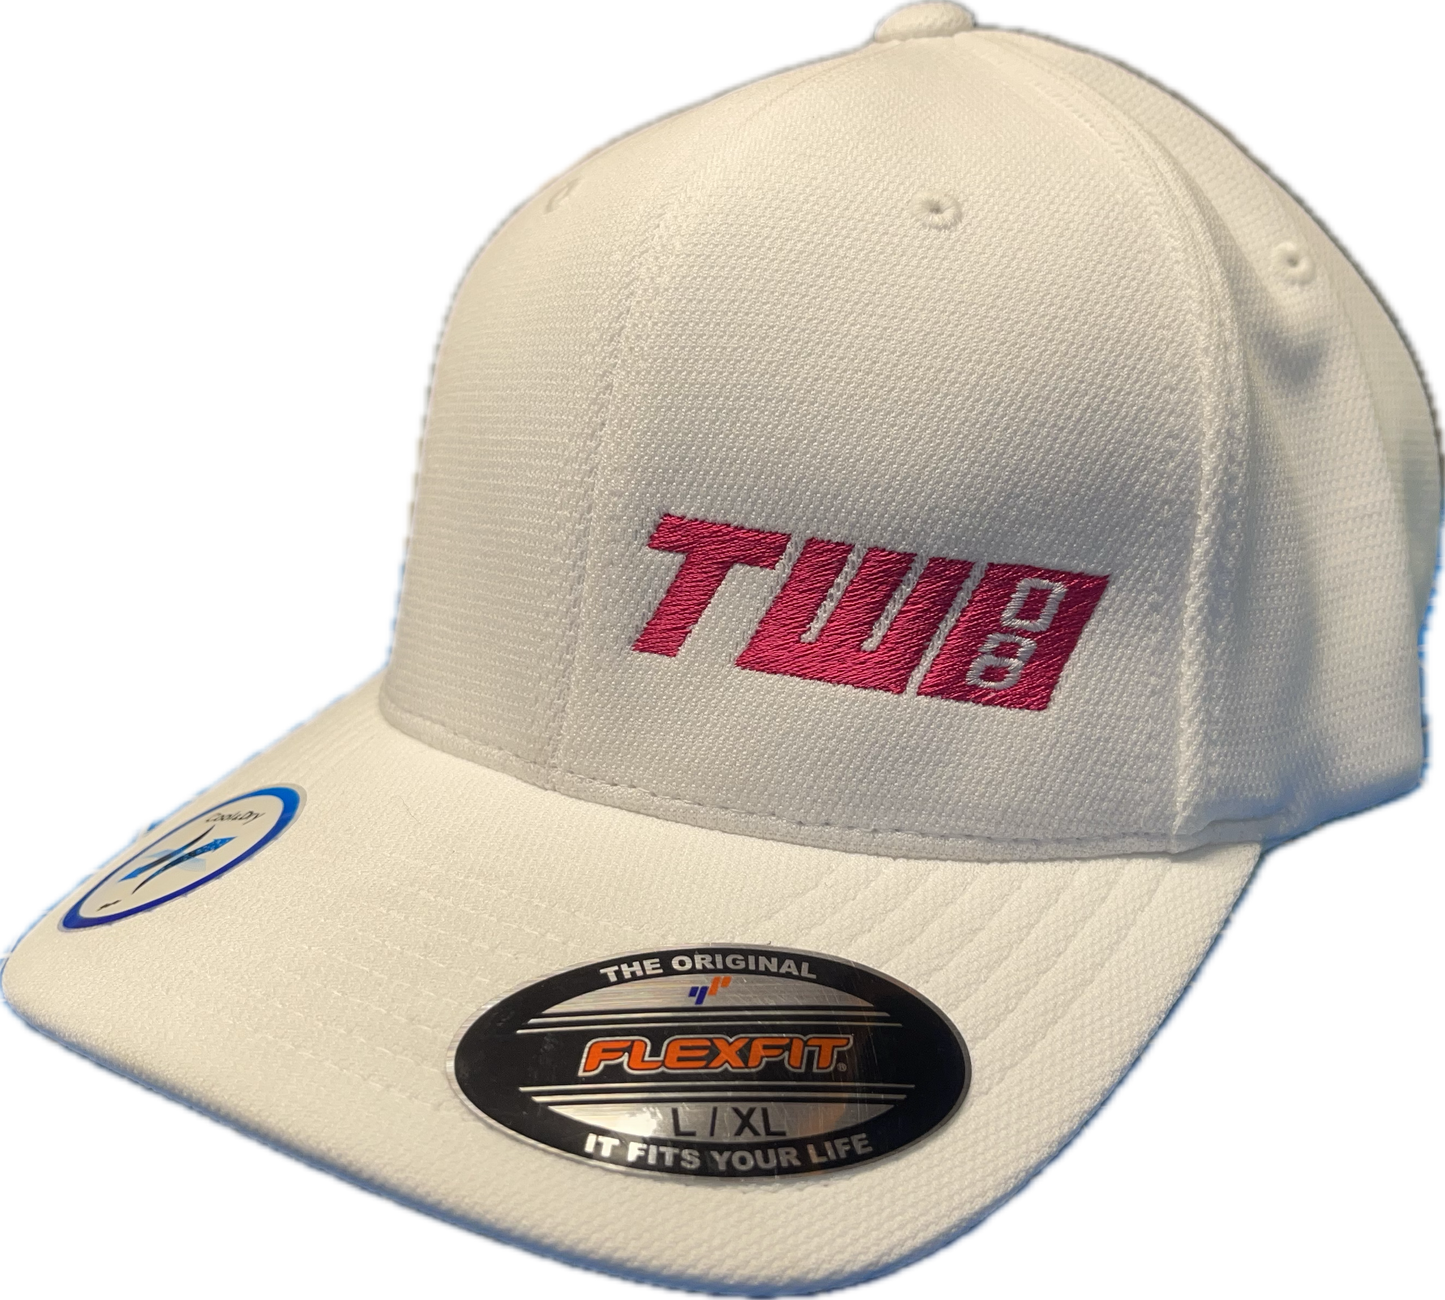 TWO Flex Trucker Hat